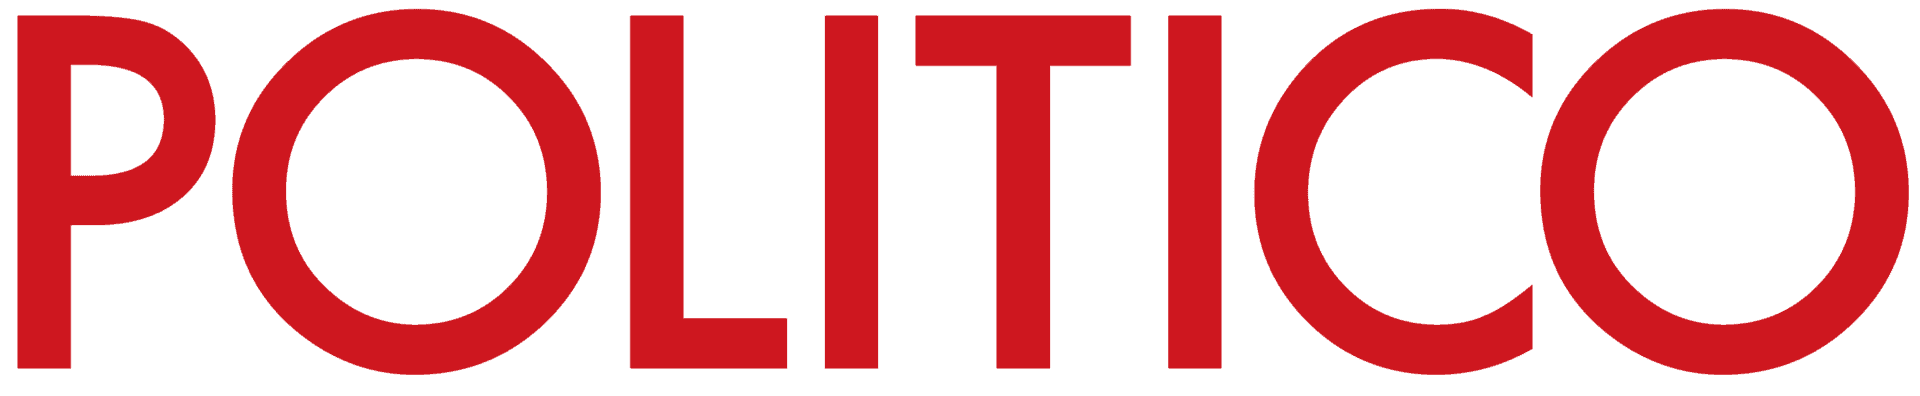 Politico_Logo_Red_HD